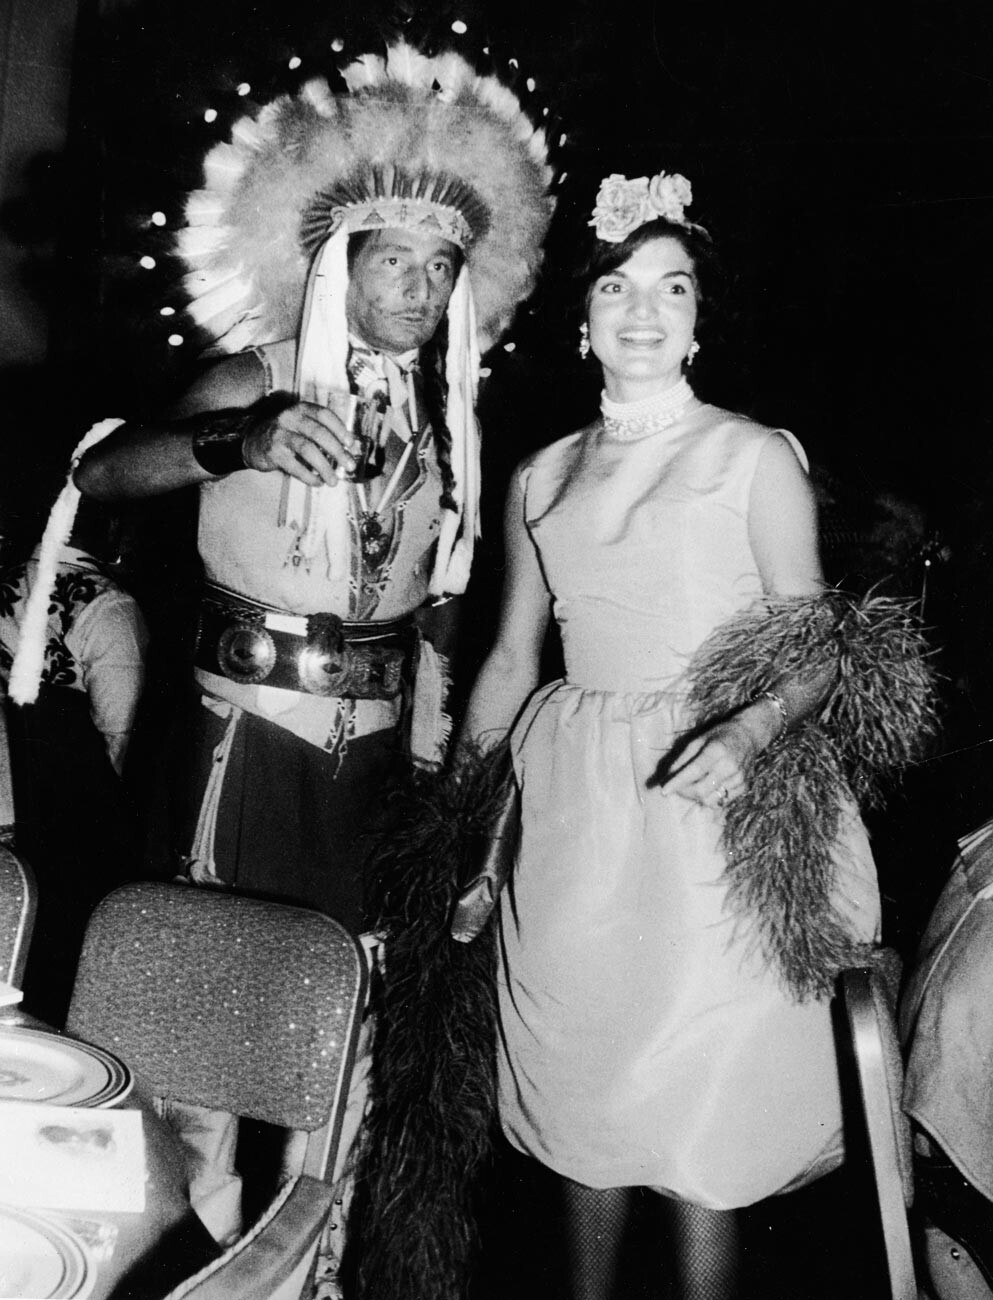 Oleg Cassini e Jacqueline Kennedy a una festa in costume nei primi anni Sessanta
